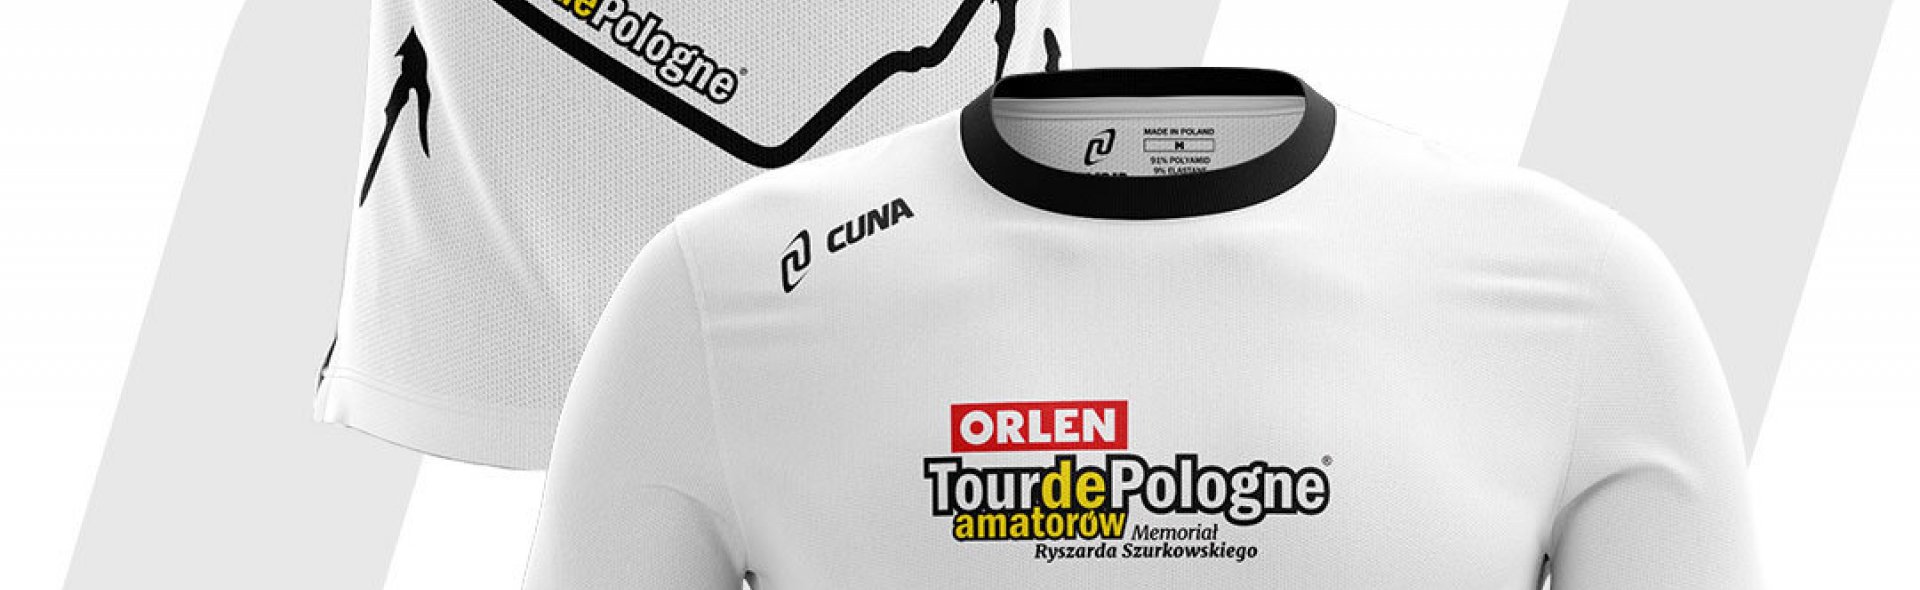 Oryginalny T-shirt Tour de Pologne już w sprzedaży!